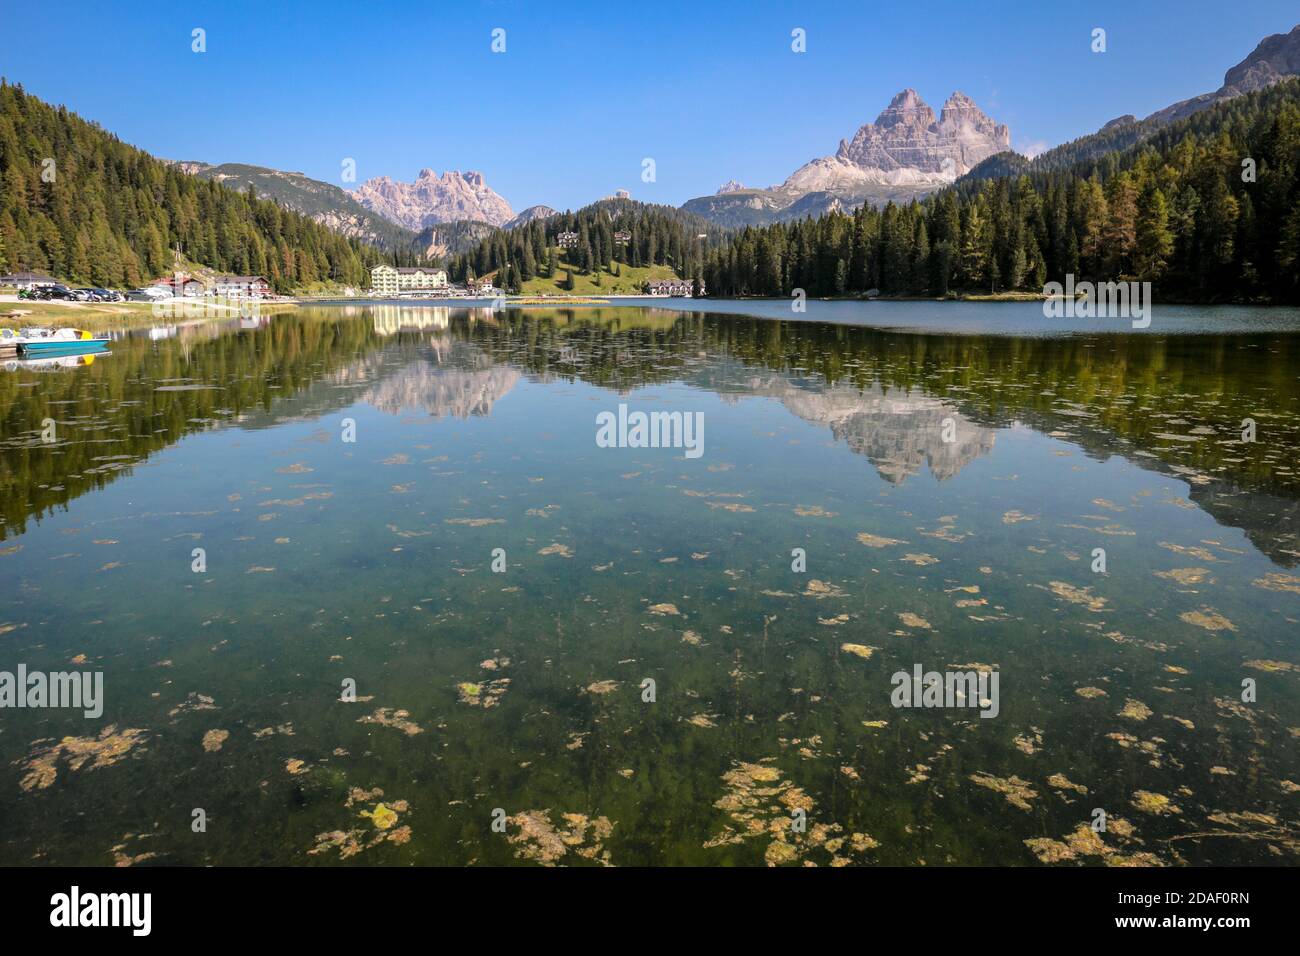 Lago di Misurina (Lago di Misurina) con riflessi specchio del panorama alpino delle Dolomiti a Misurina, Veneto, Italia settentrionale. Foto Stock